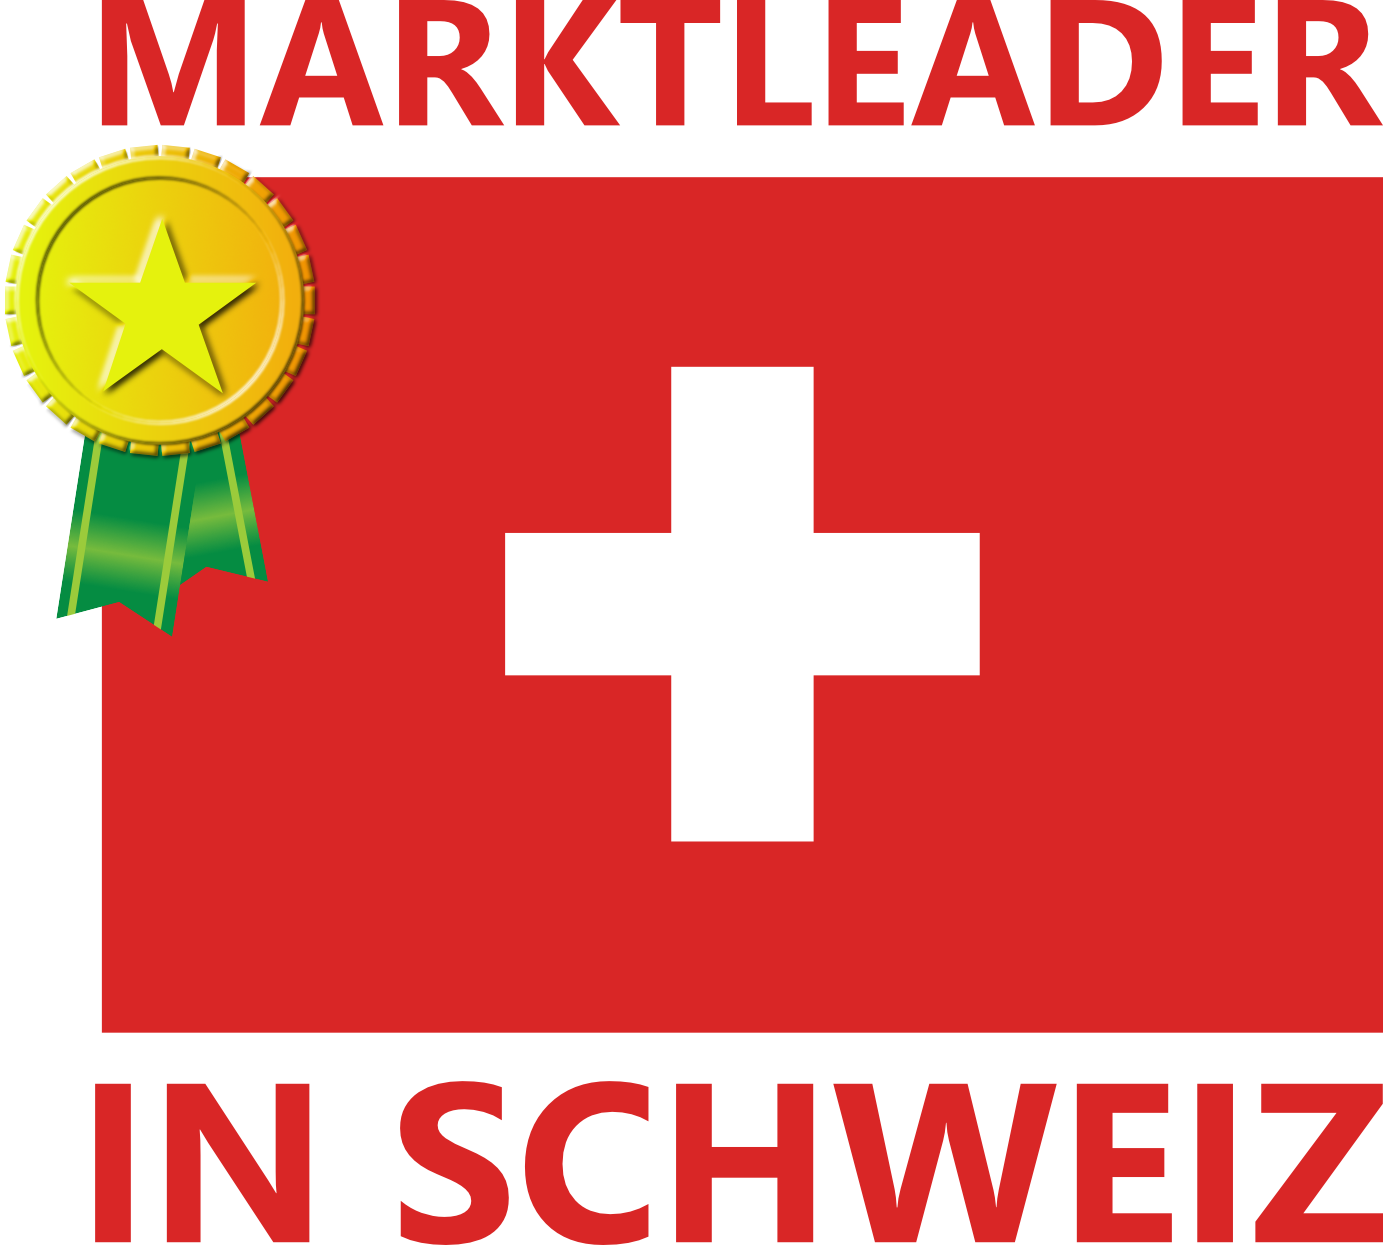 schweiz_marktleader_02-1-1.png